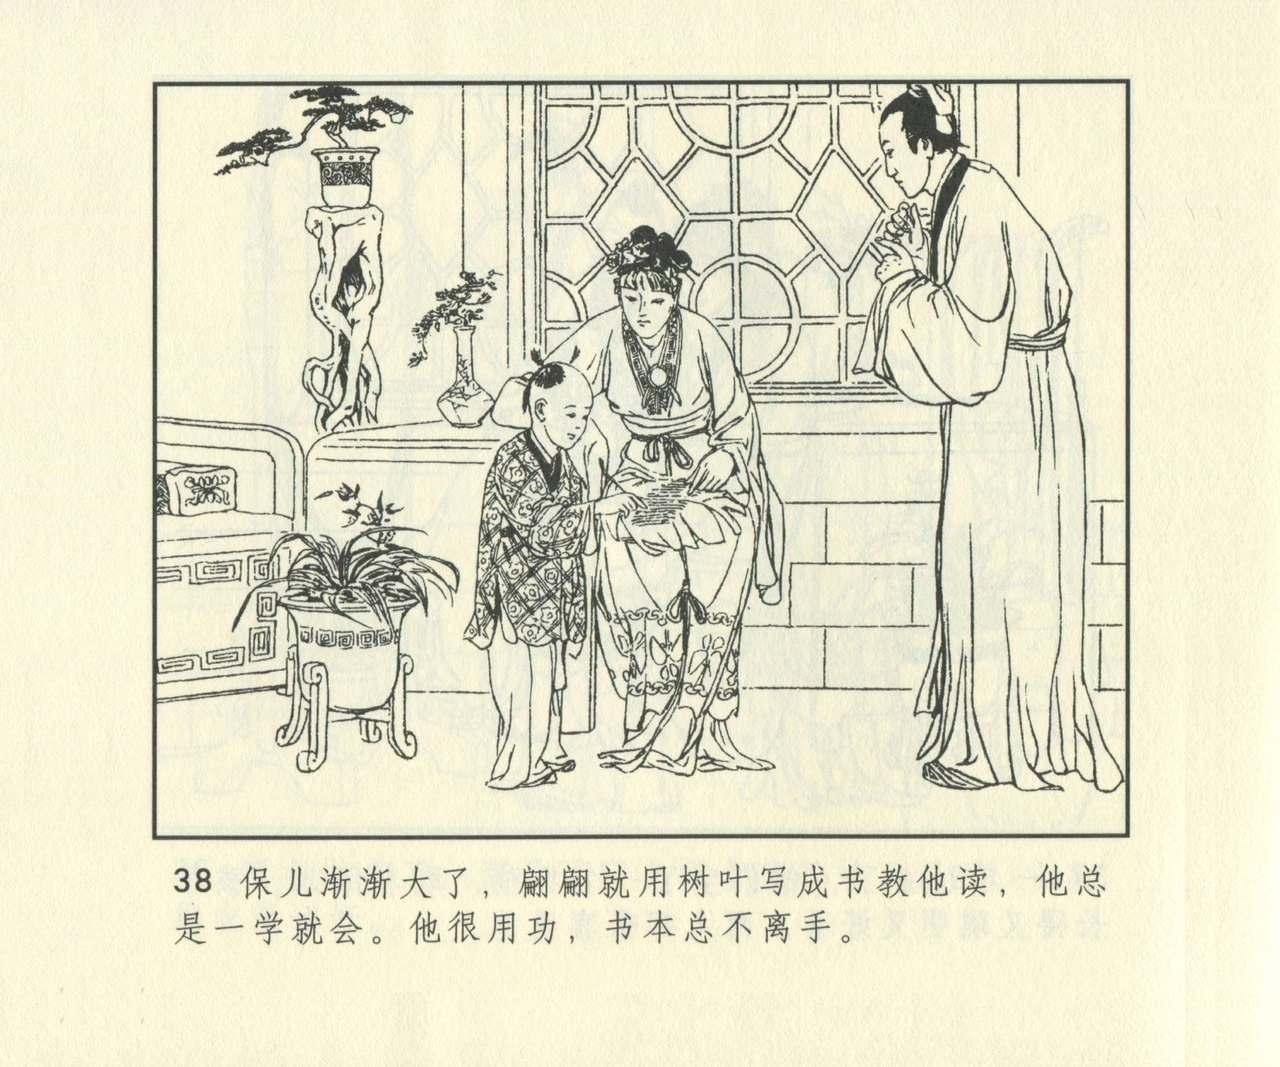 聊斋志异 张玮等绘 天津人民美术出版社 卷二十一 ~ 三十 654